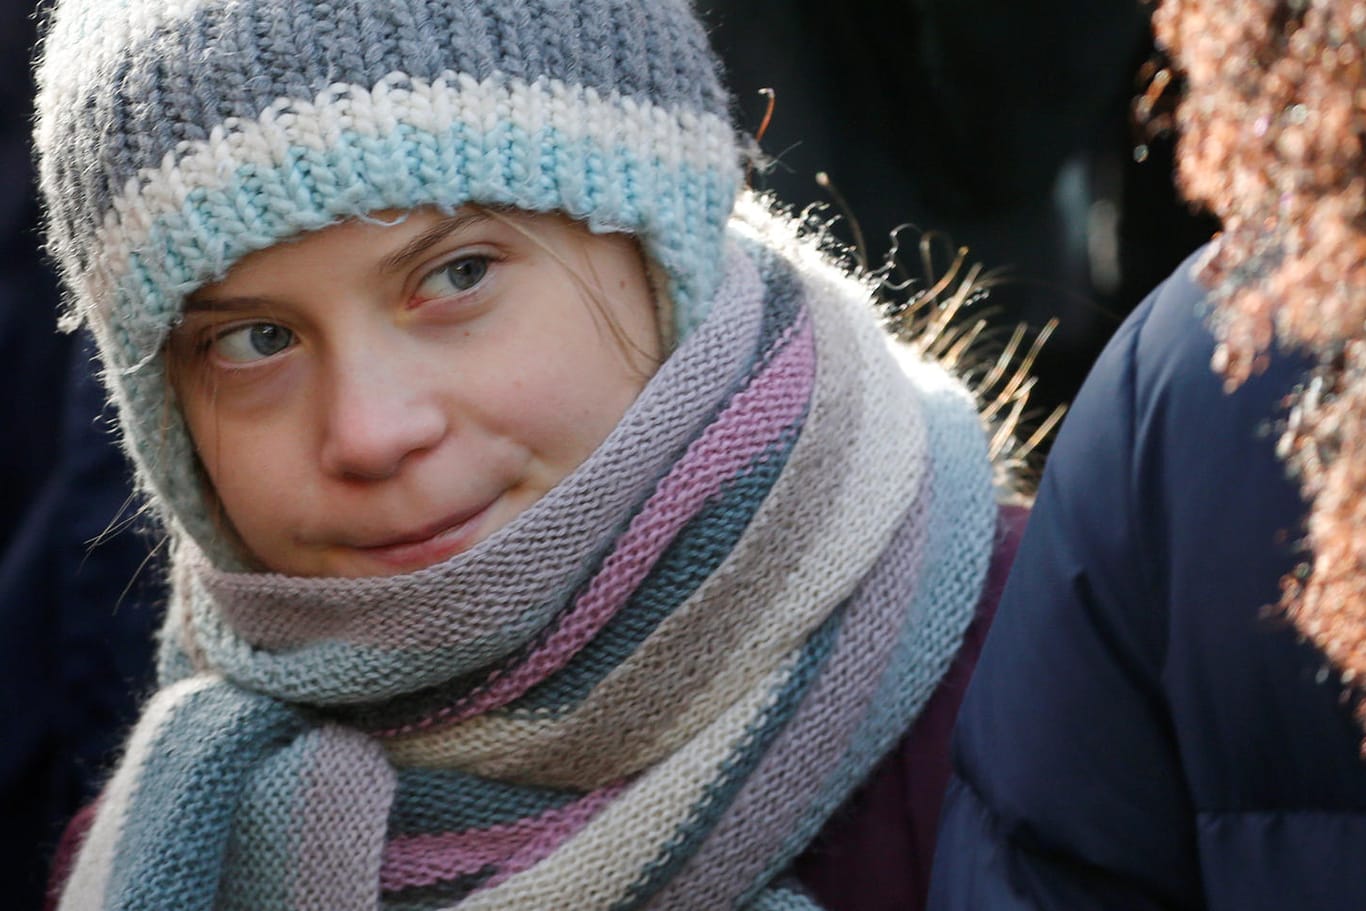 Klimaaktivistin Greta Thunberg nahm am Freitag an einer Kundgebung in Davos teil.